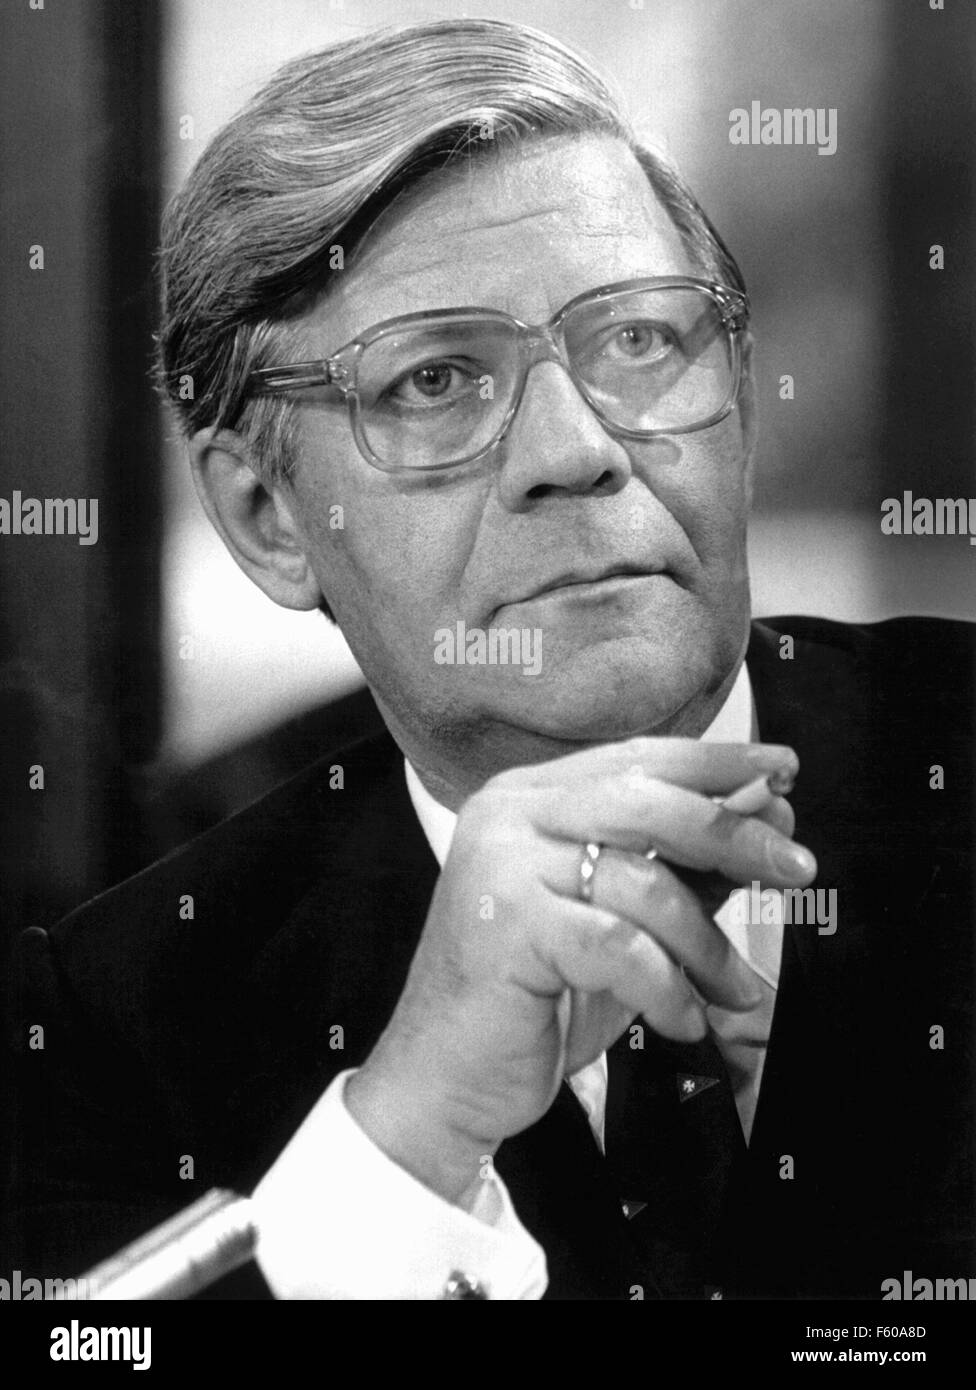 Bundeskanzler Helmut Schmidt, in der Regel mit Zigarette, während einer Pressekonferenz am 19. Oktober 1978 in Bonn. Stockfoto